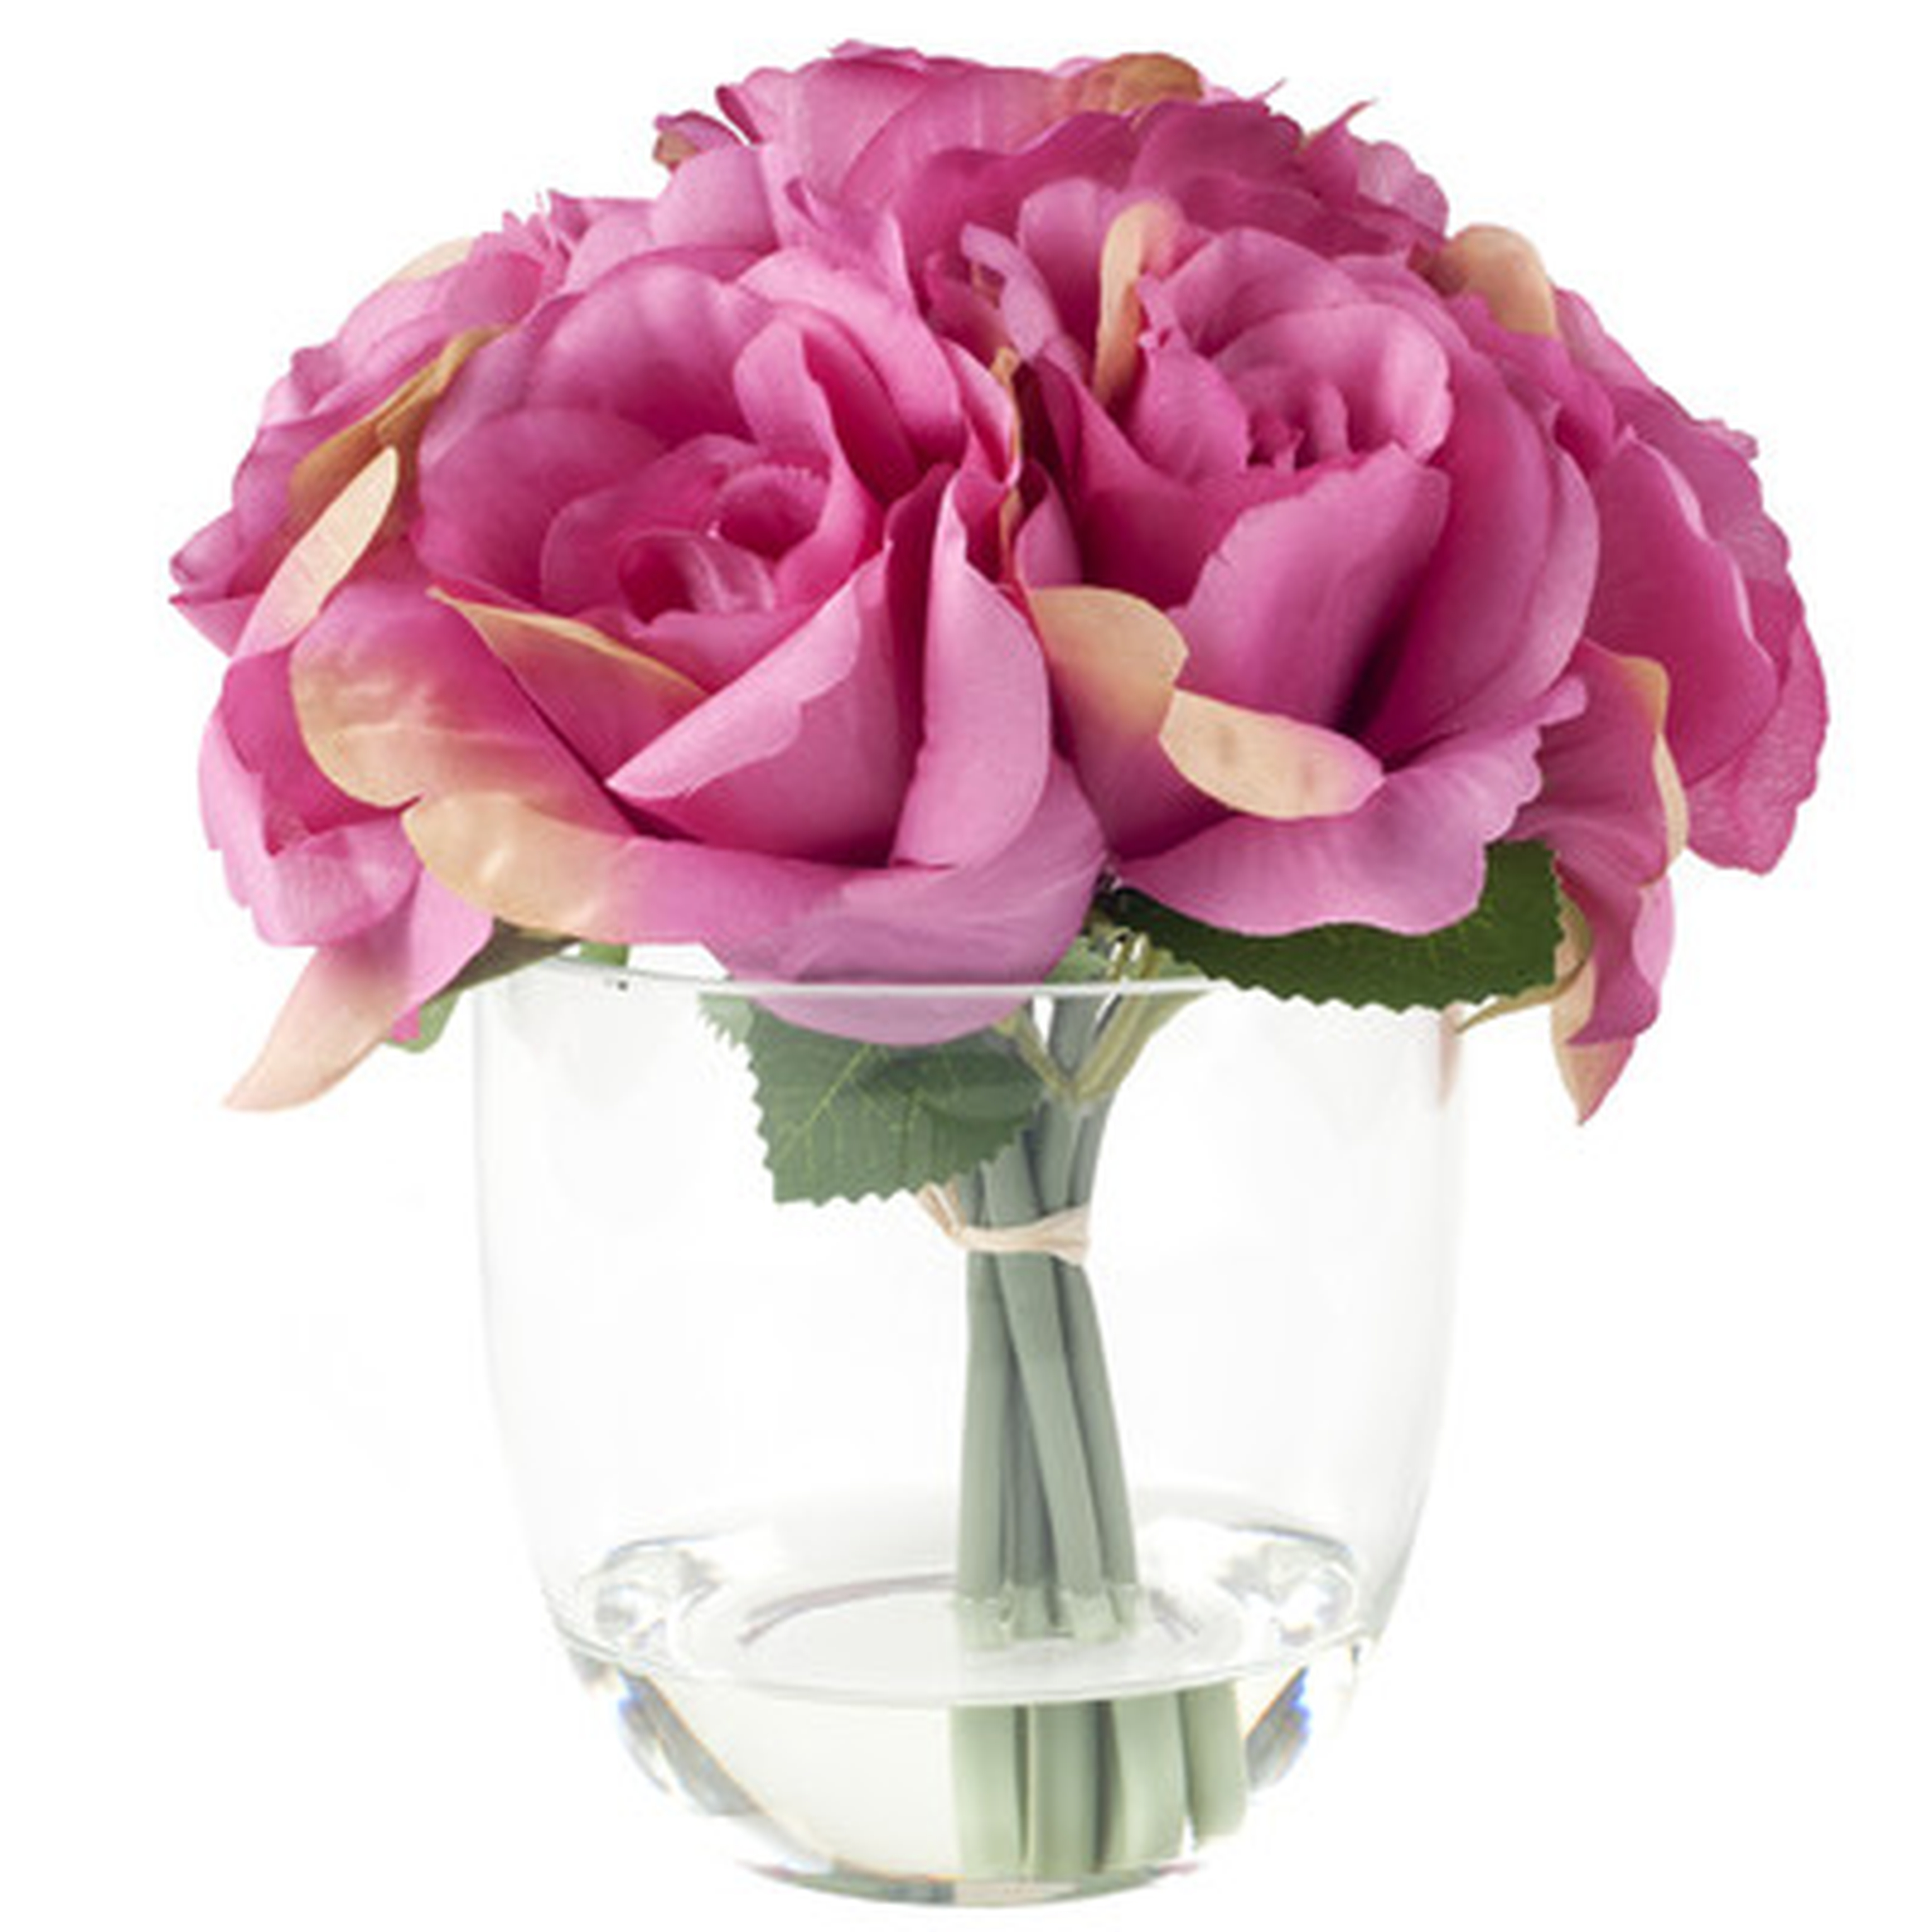 Rose Floral Arrangement in Glass Vase - AllModern